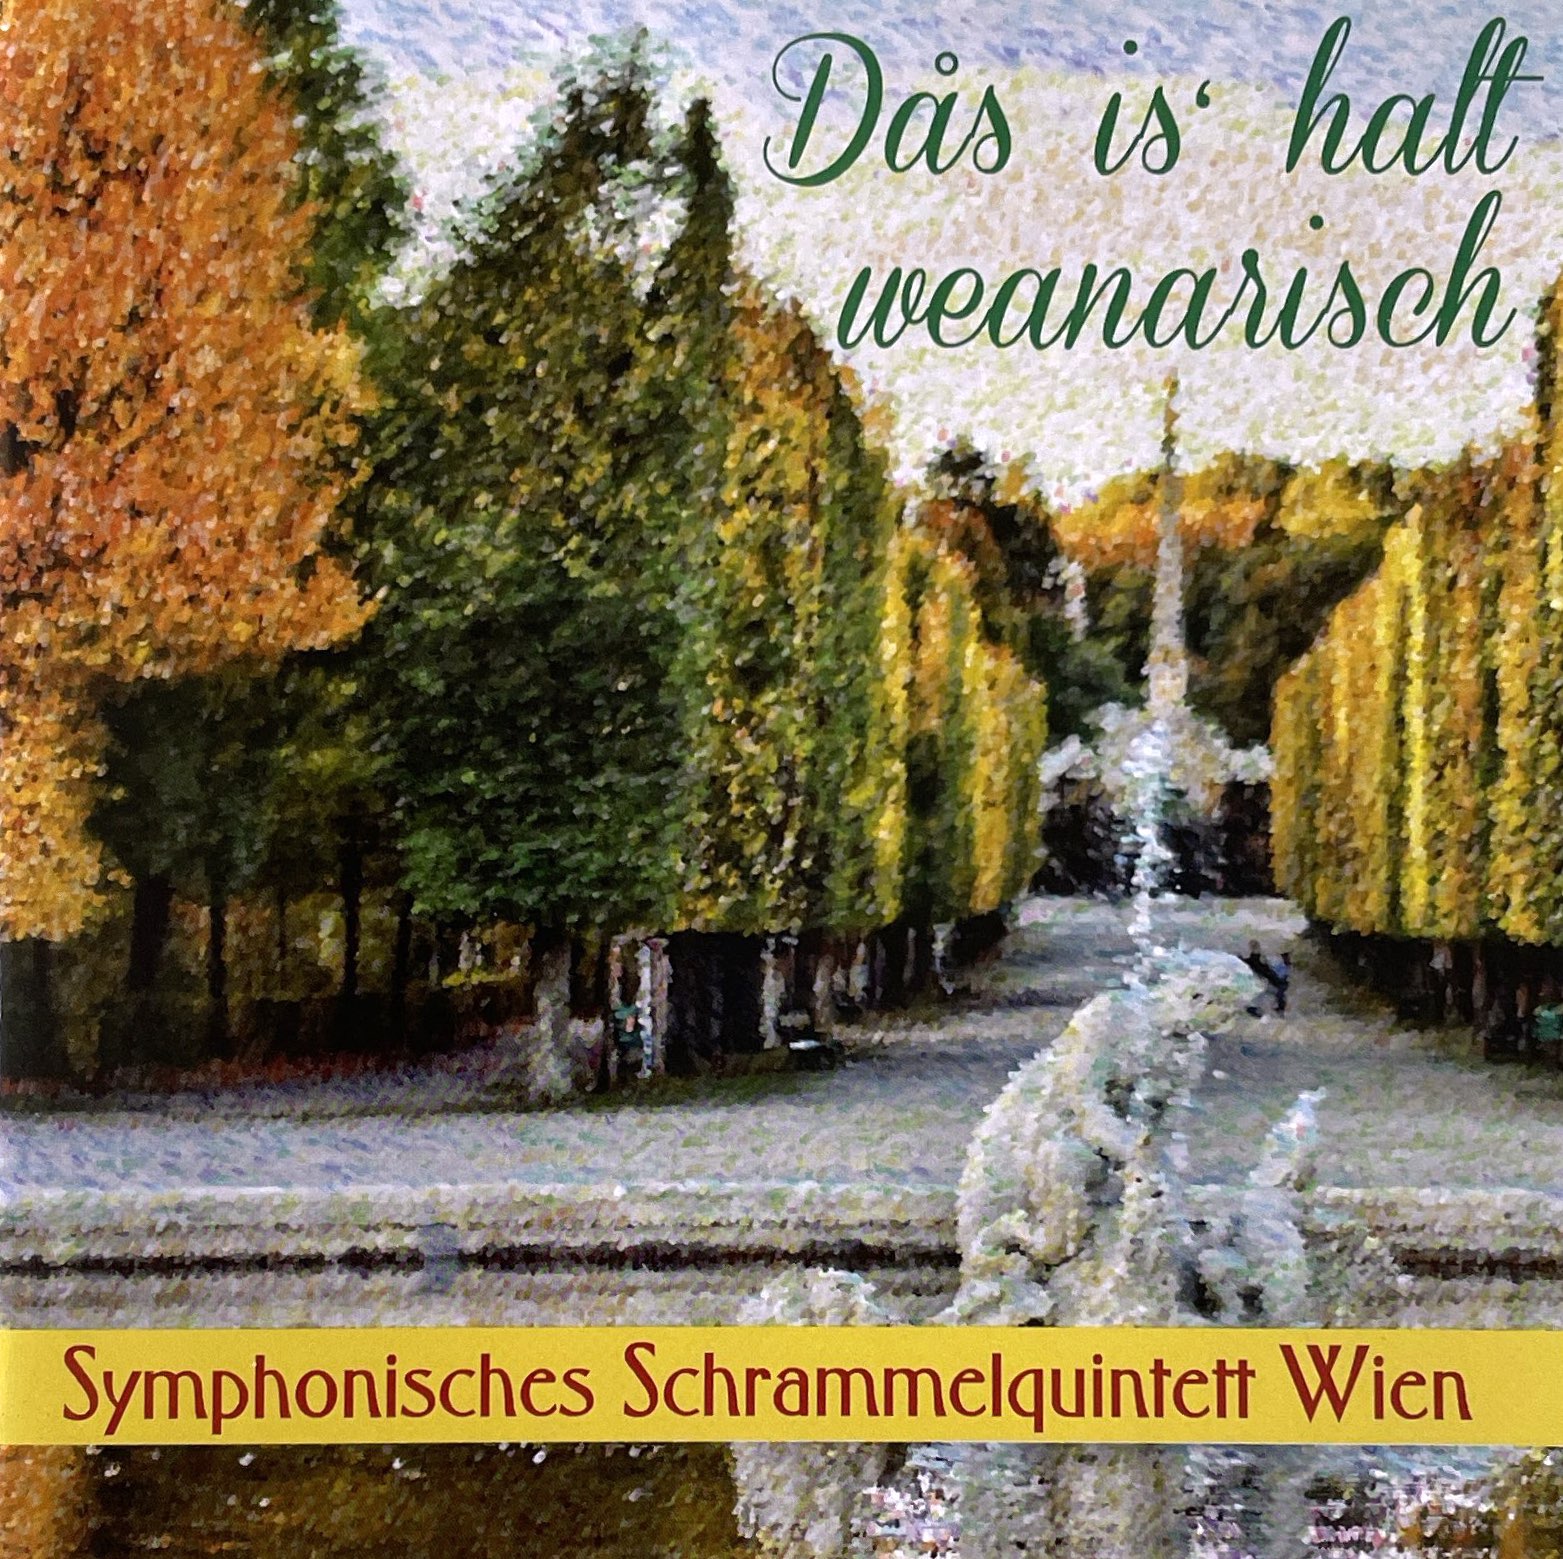 Symphonisches Schrammelquintet Wien – Das is halt weanarisch